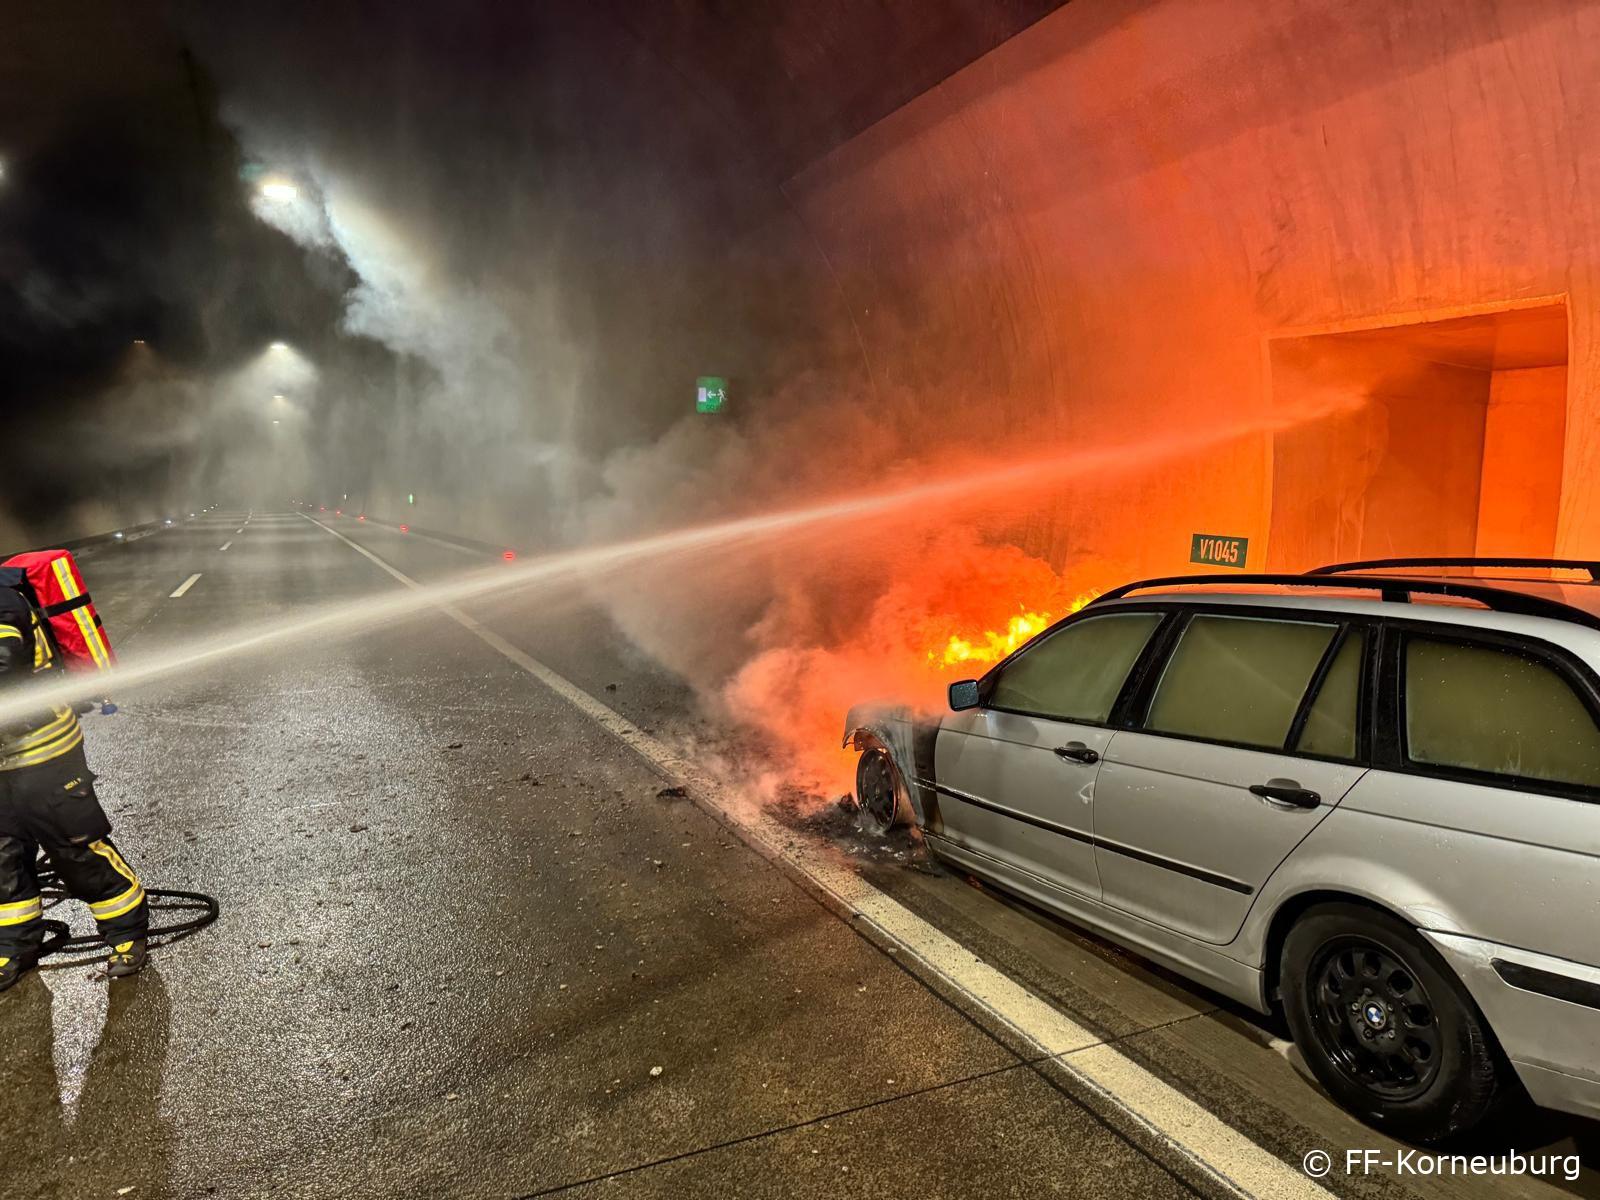 Brandeinsatz im Tunnel: Feuerwehr verhindert großes Unglück!